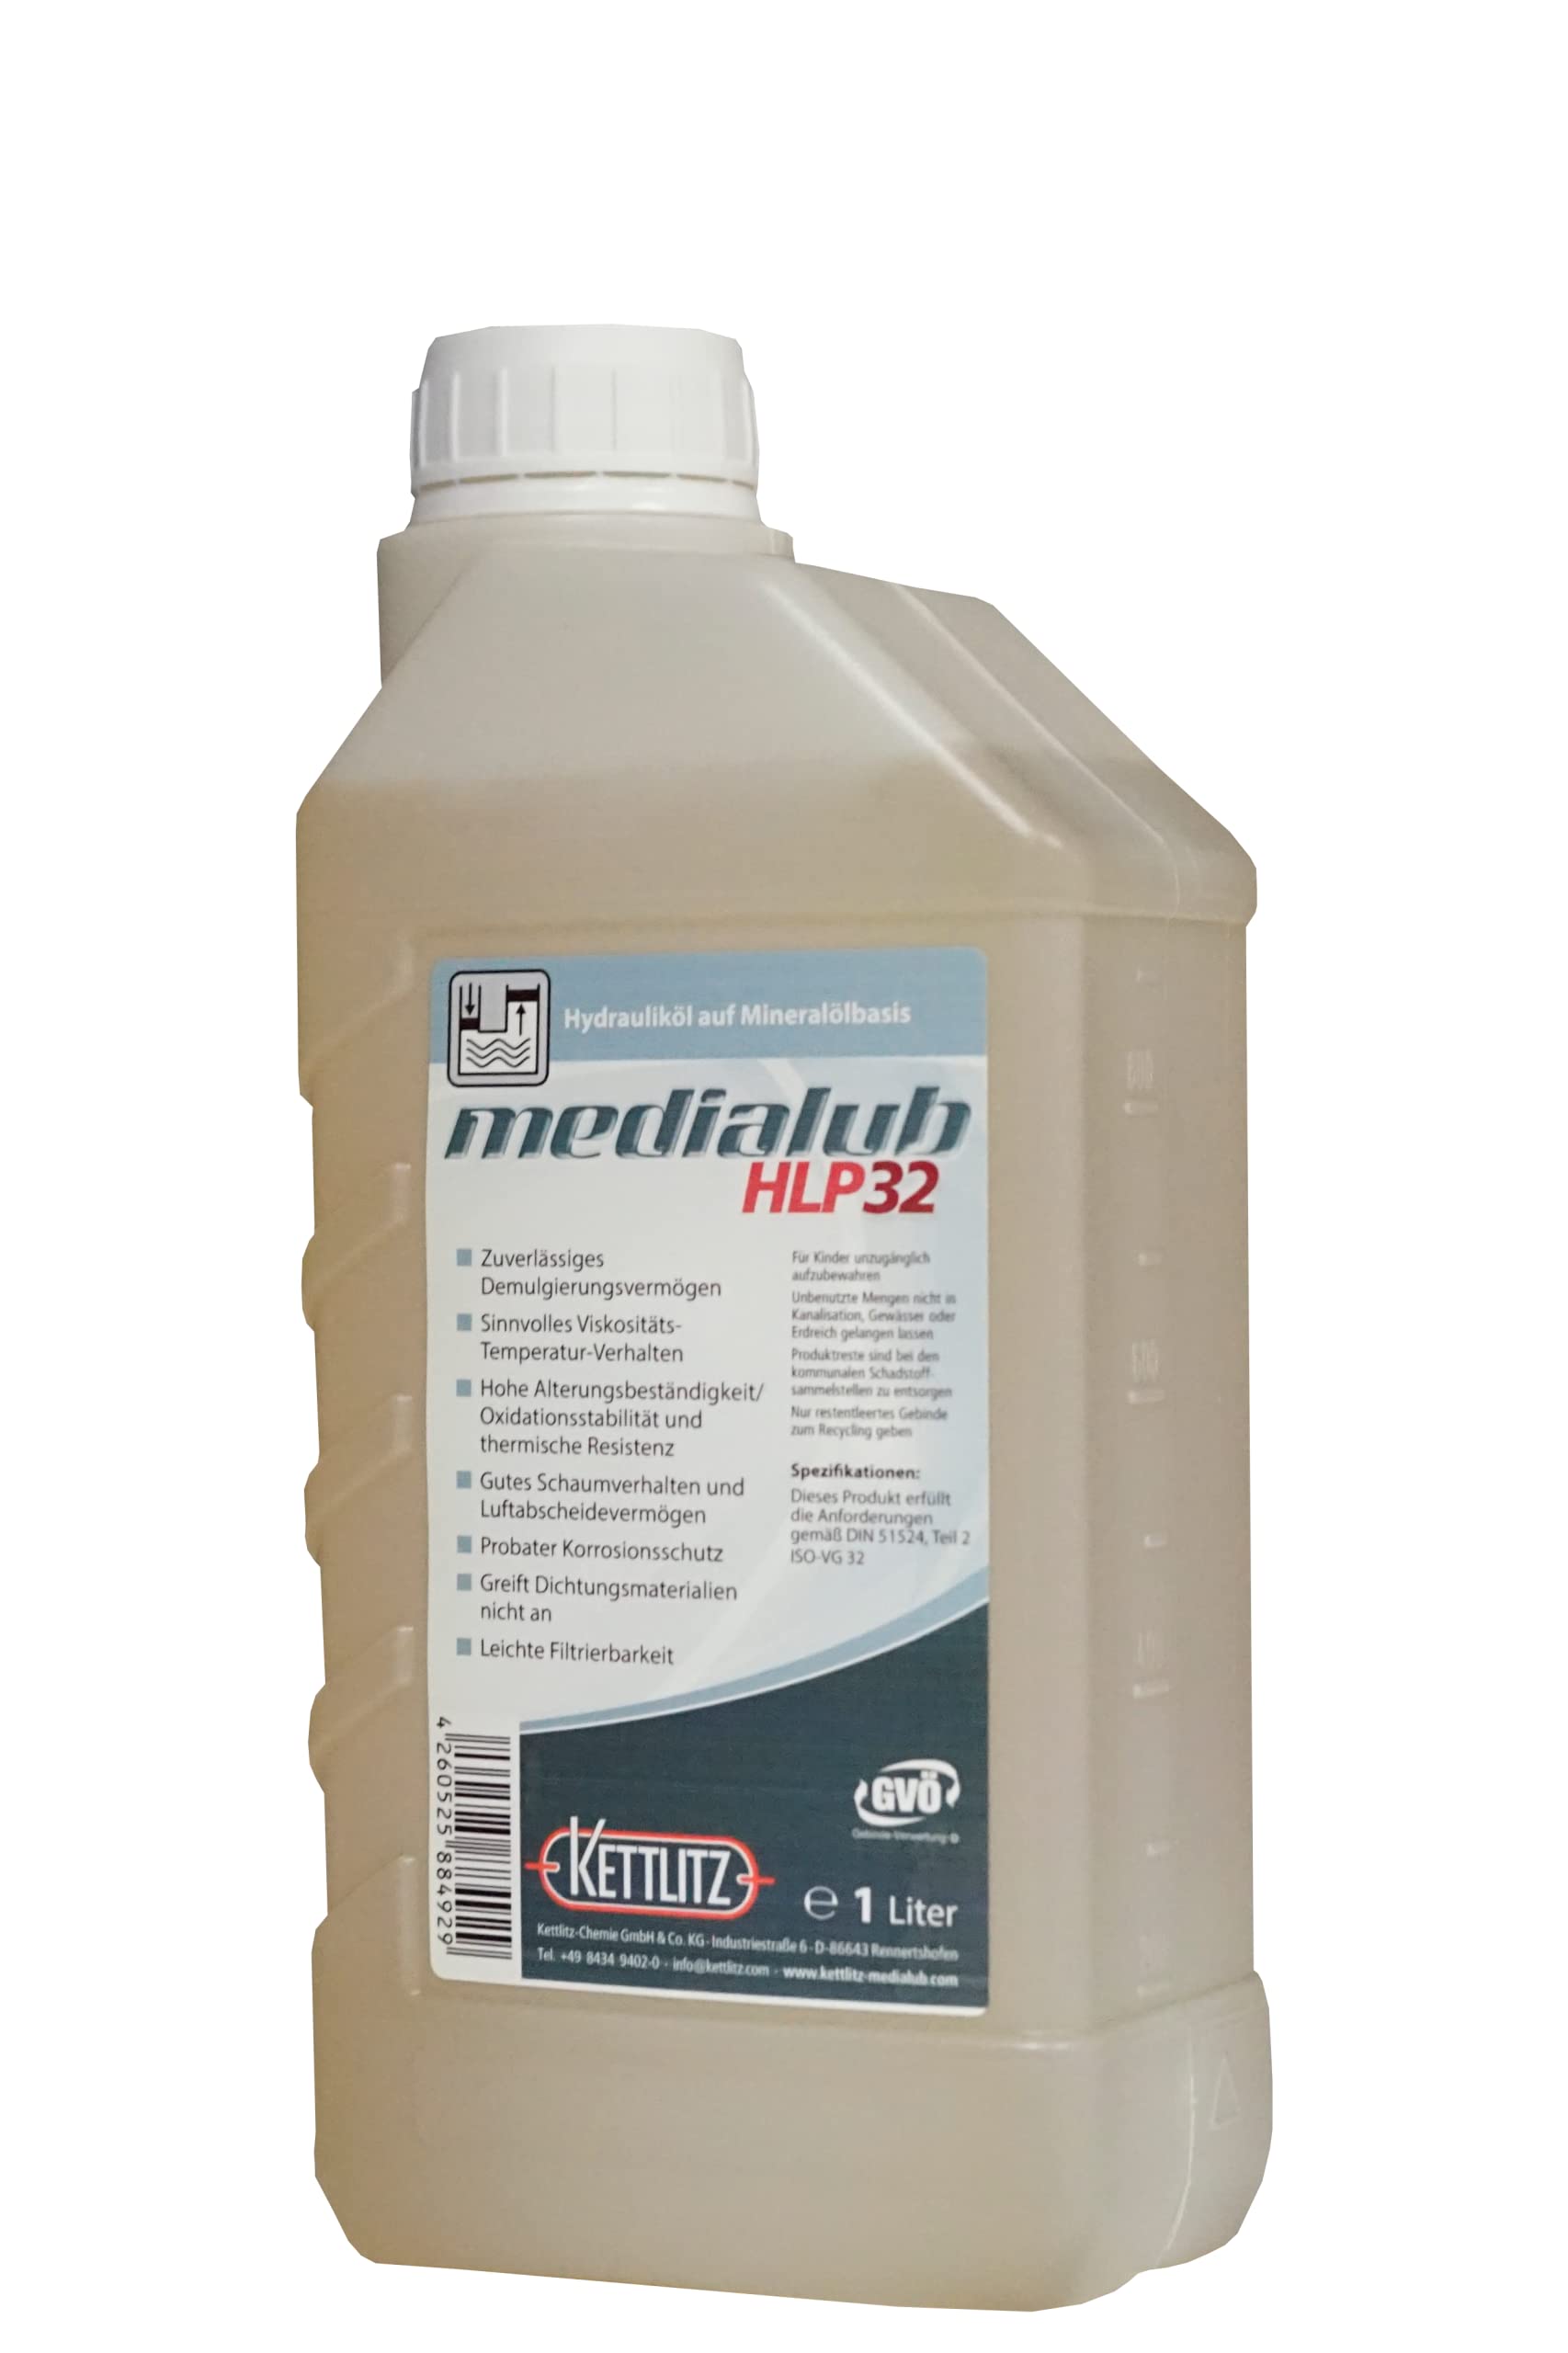 1 Liter Mineralisches Hydrauliköl KETTLITZ-Medialub HLP 32 Hydrauliköl auf Mineralölbasis von KETTLITZ-Medialub